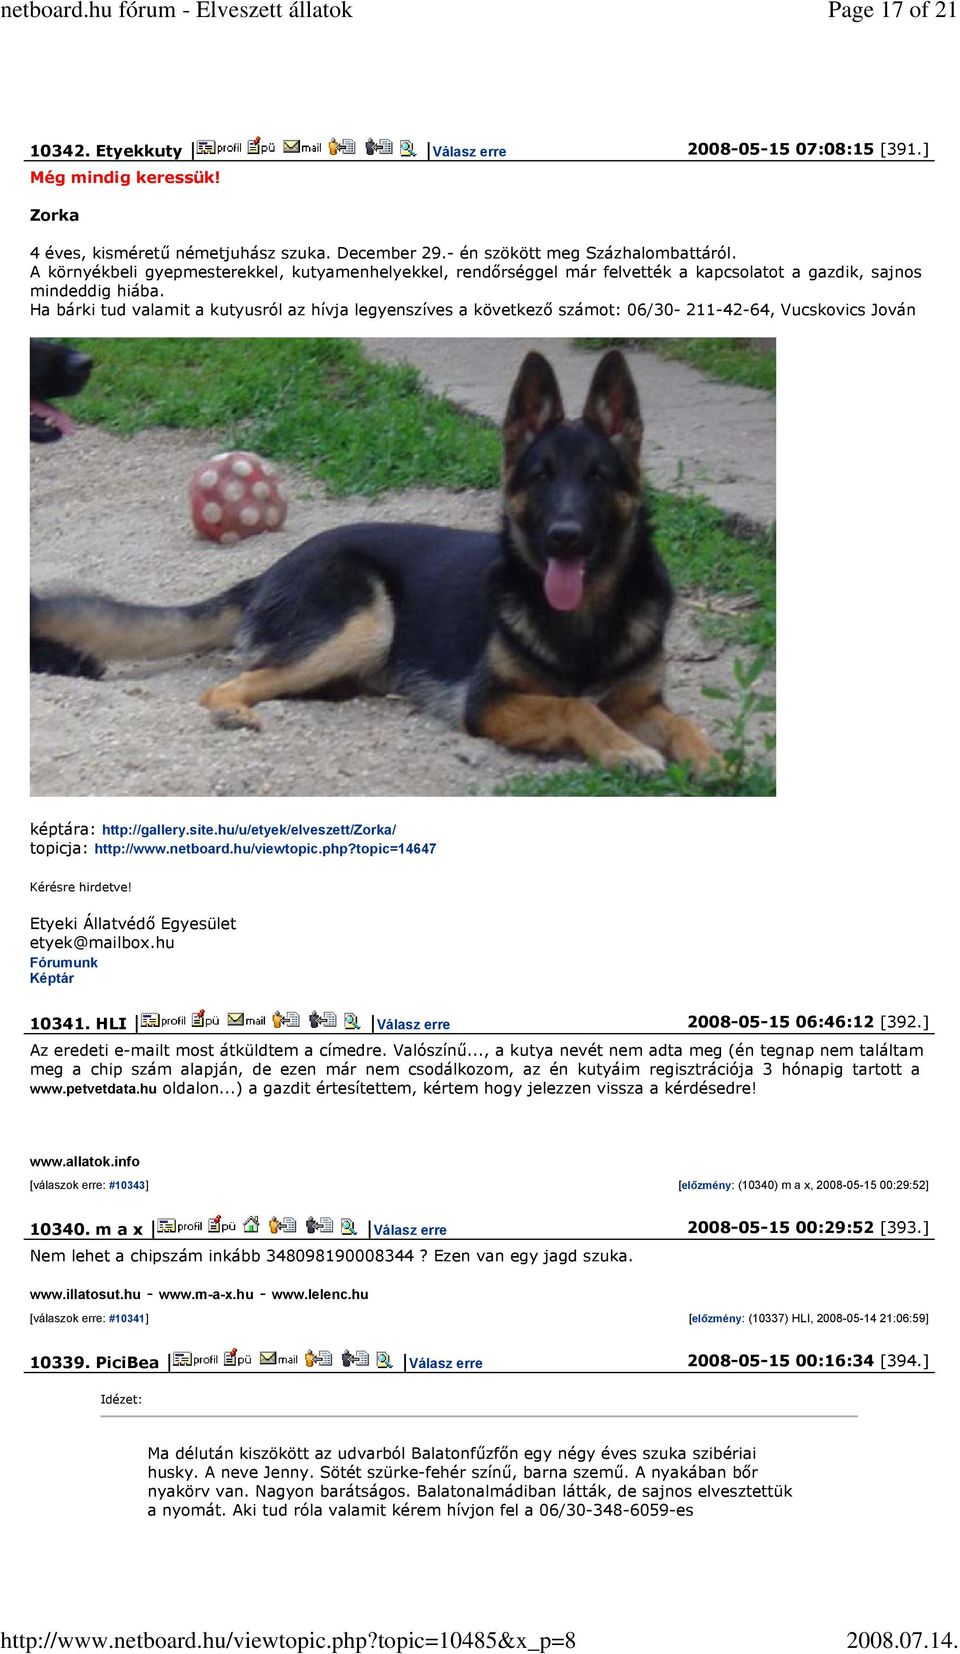 Ha bárki tud valamit a kutyusról az hívja legyenszíves a következő számot: 06/30-211-42-64, Vucskovics Jován képtára: http://gallery.site.hu/u/etyek/elveszett/zorka/ topicja: http://www.netboard.